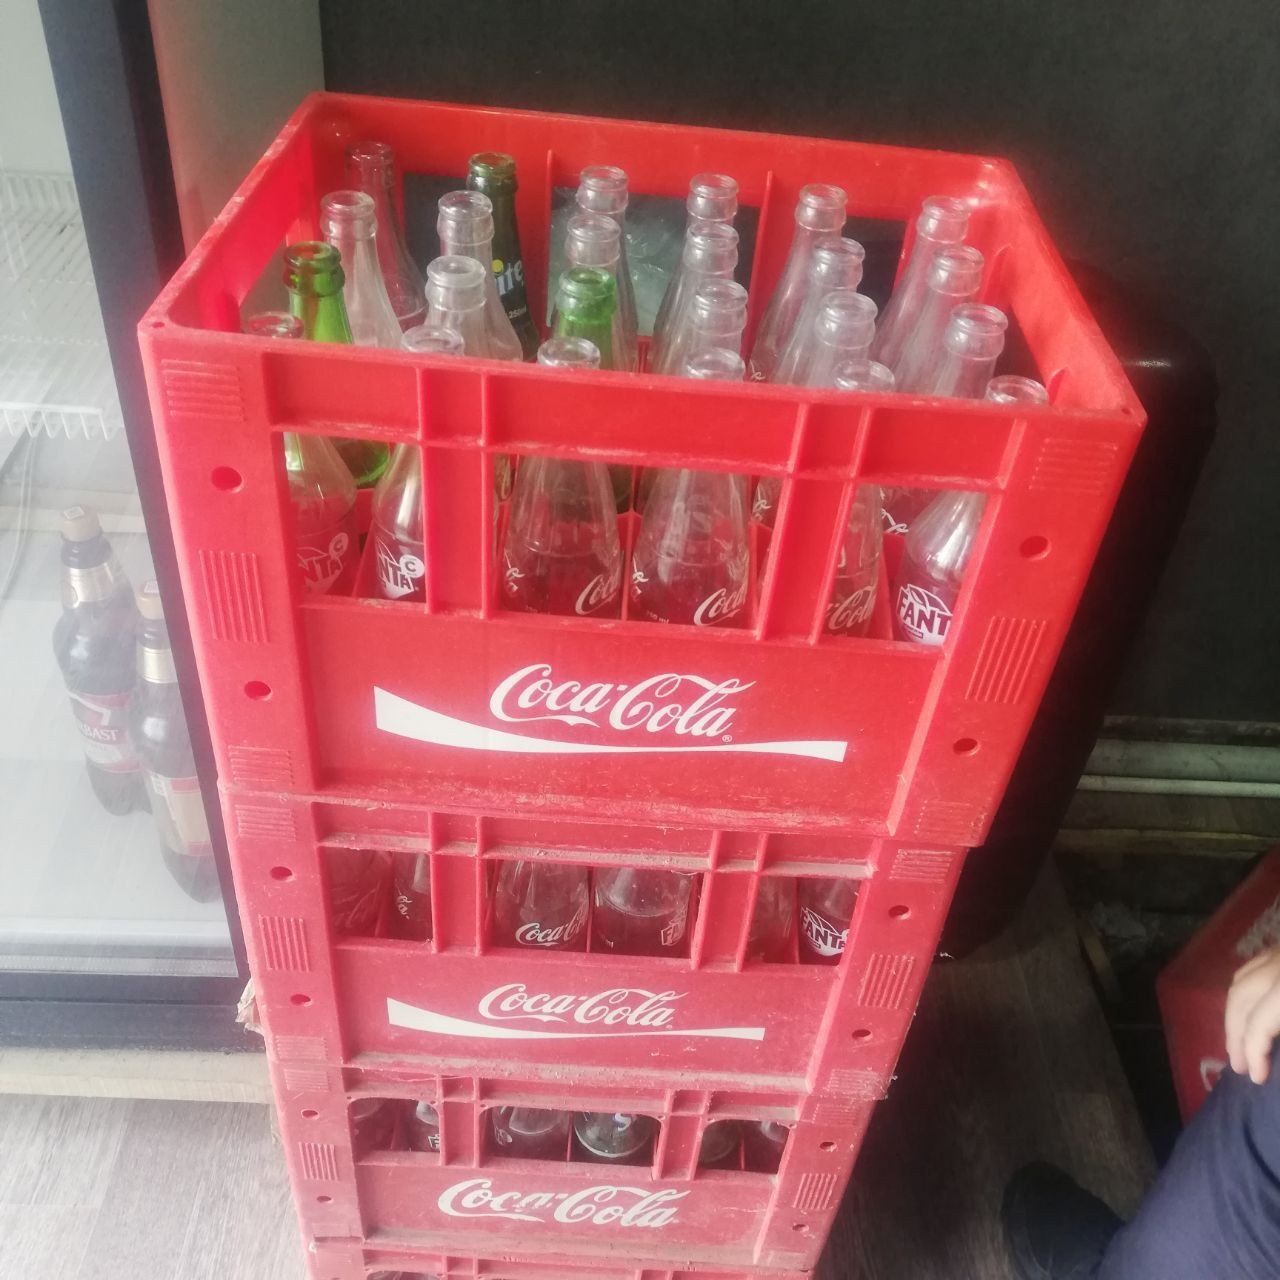 Продаётся тара с бутылками Coca-Cola
Продаётся тара Coca-Cola
6 ящик